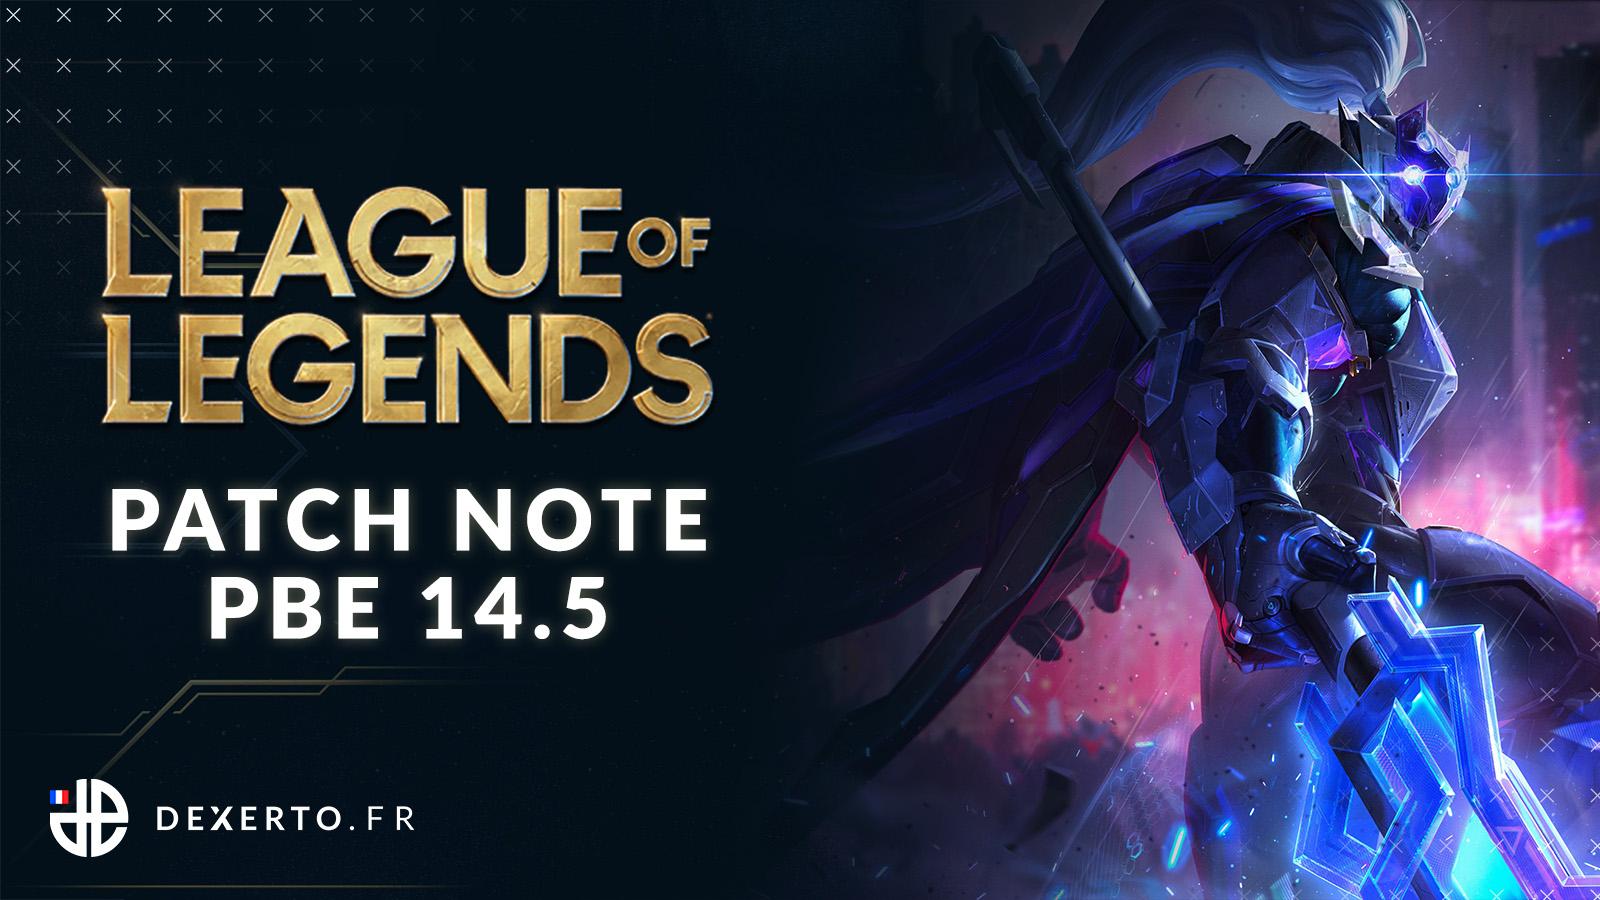 Patch Note PBE 14.5 de League of Legends